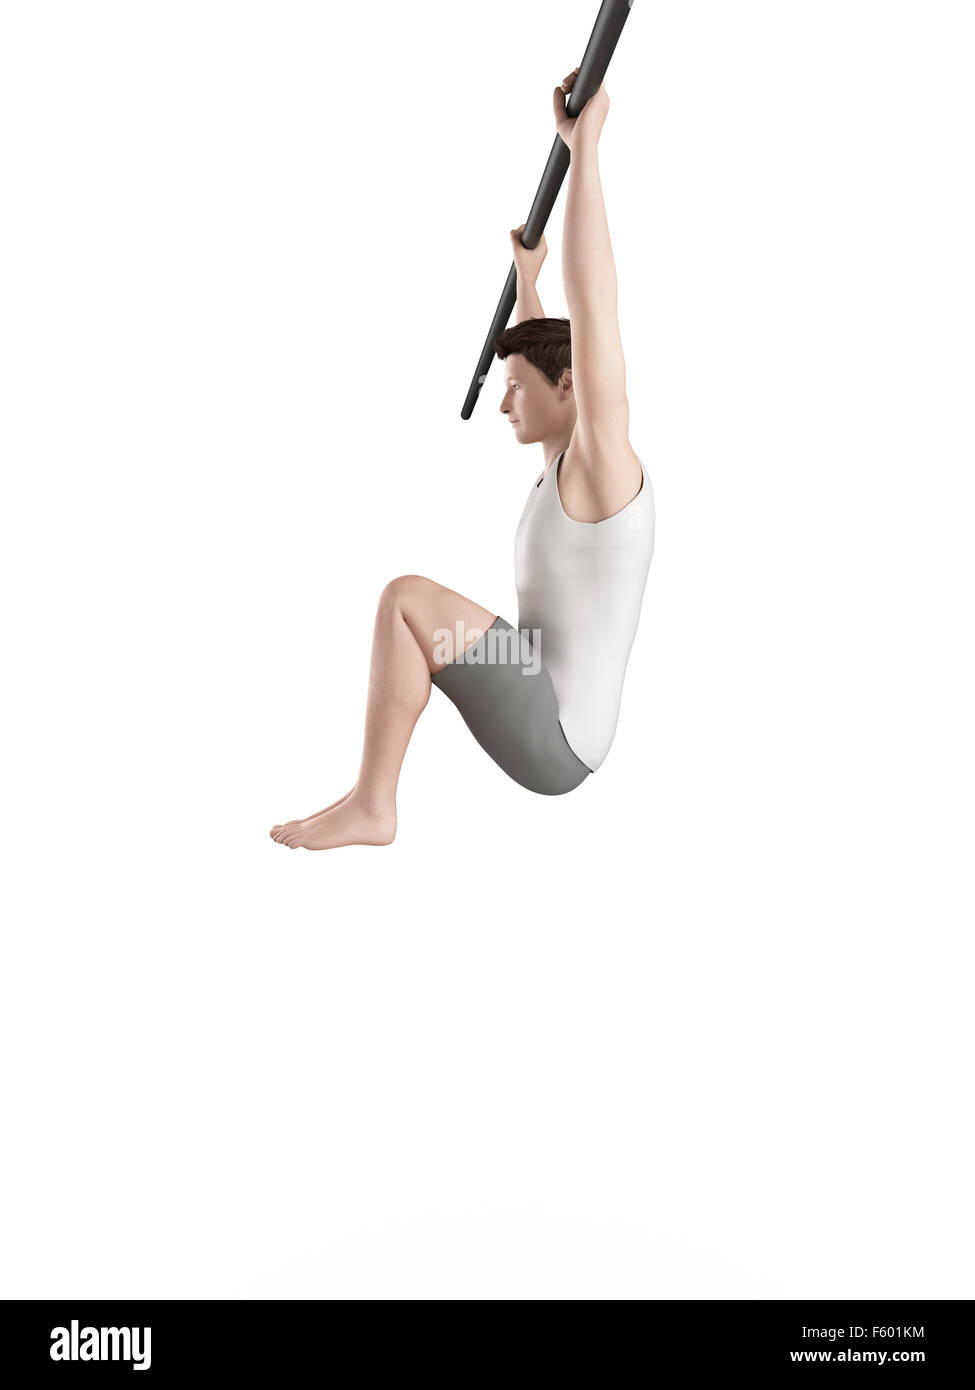 exercise illustration - hanging leg raises Stock Photo